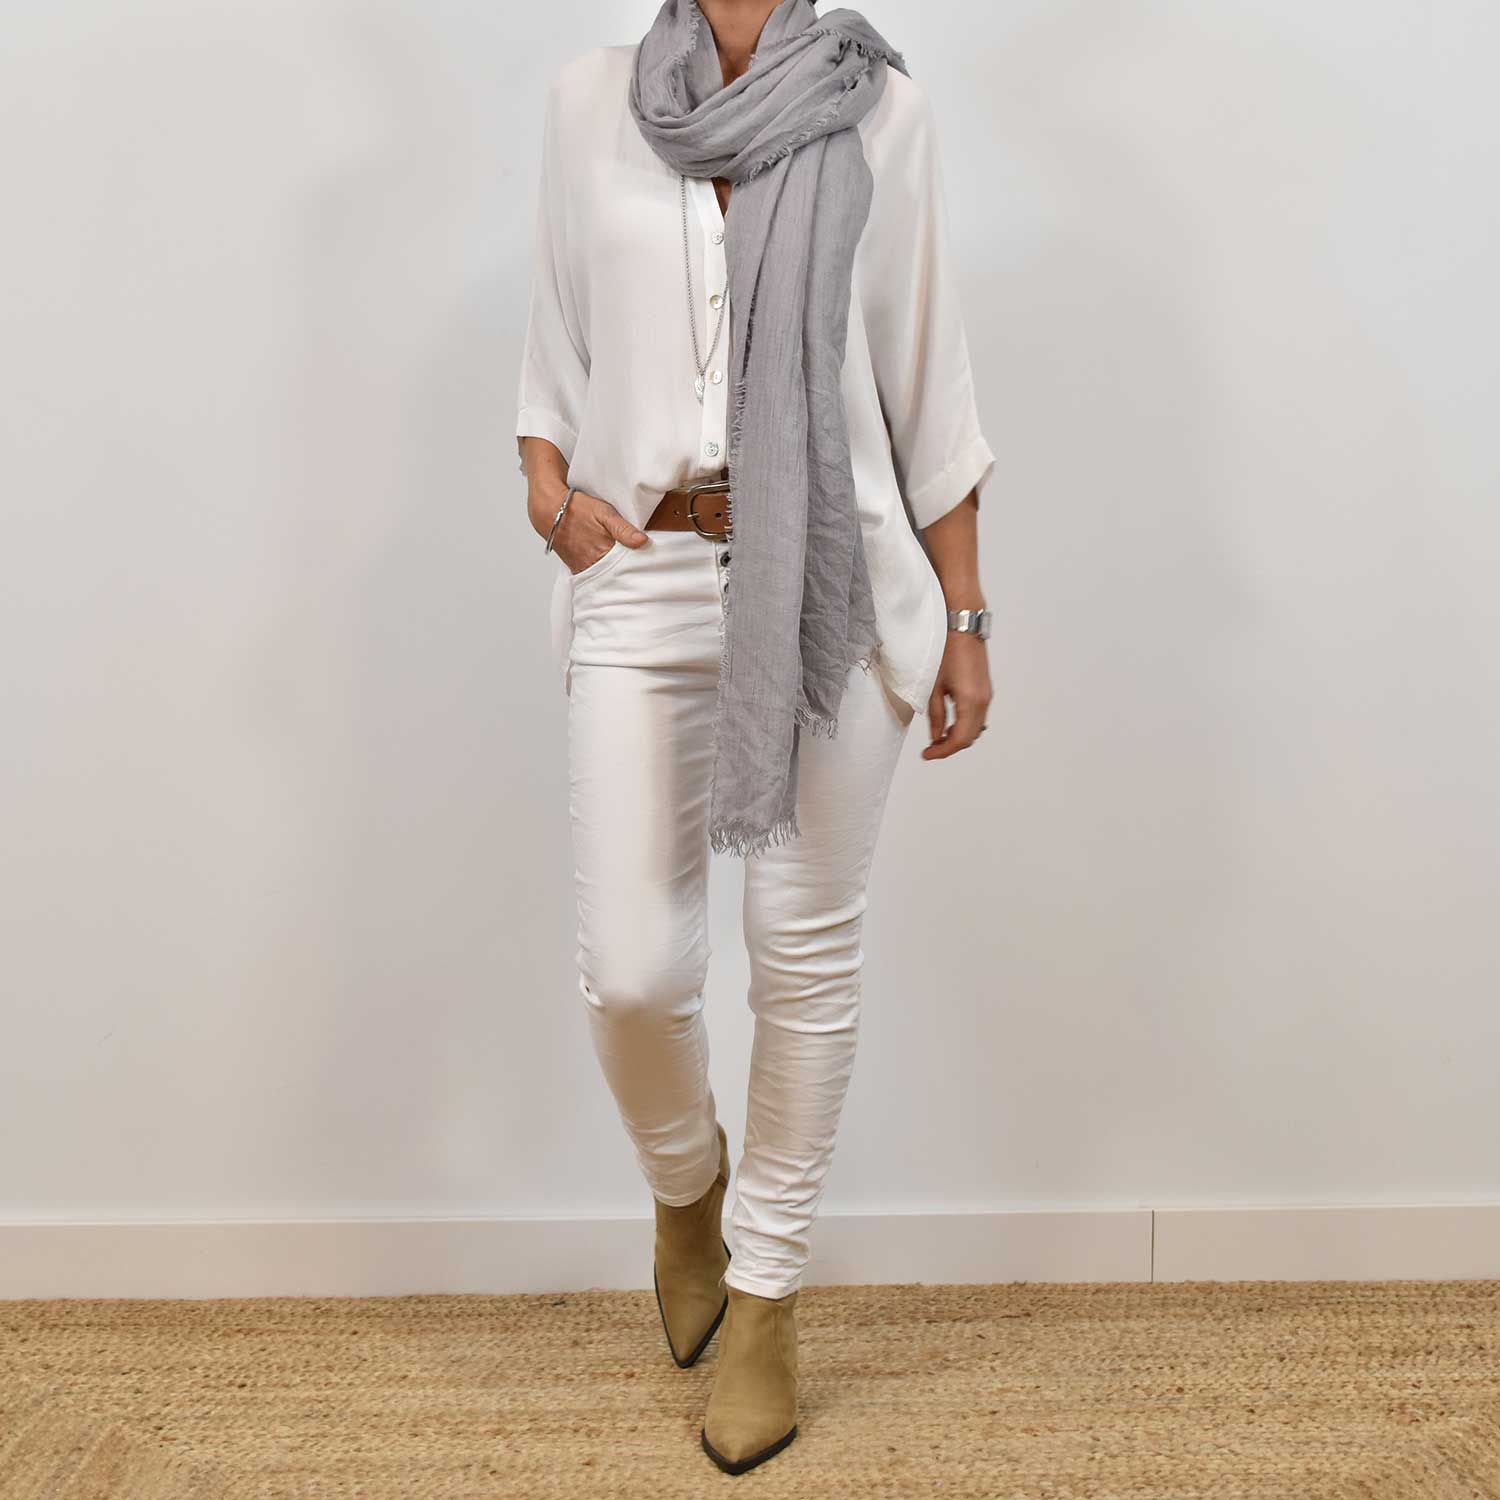 Cómo combinar un pantalón blanco – The Amisy Company